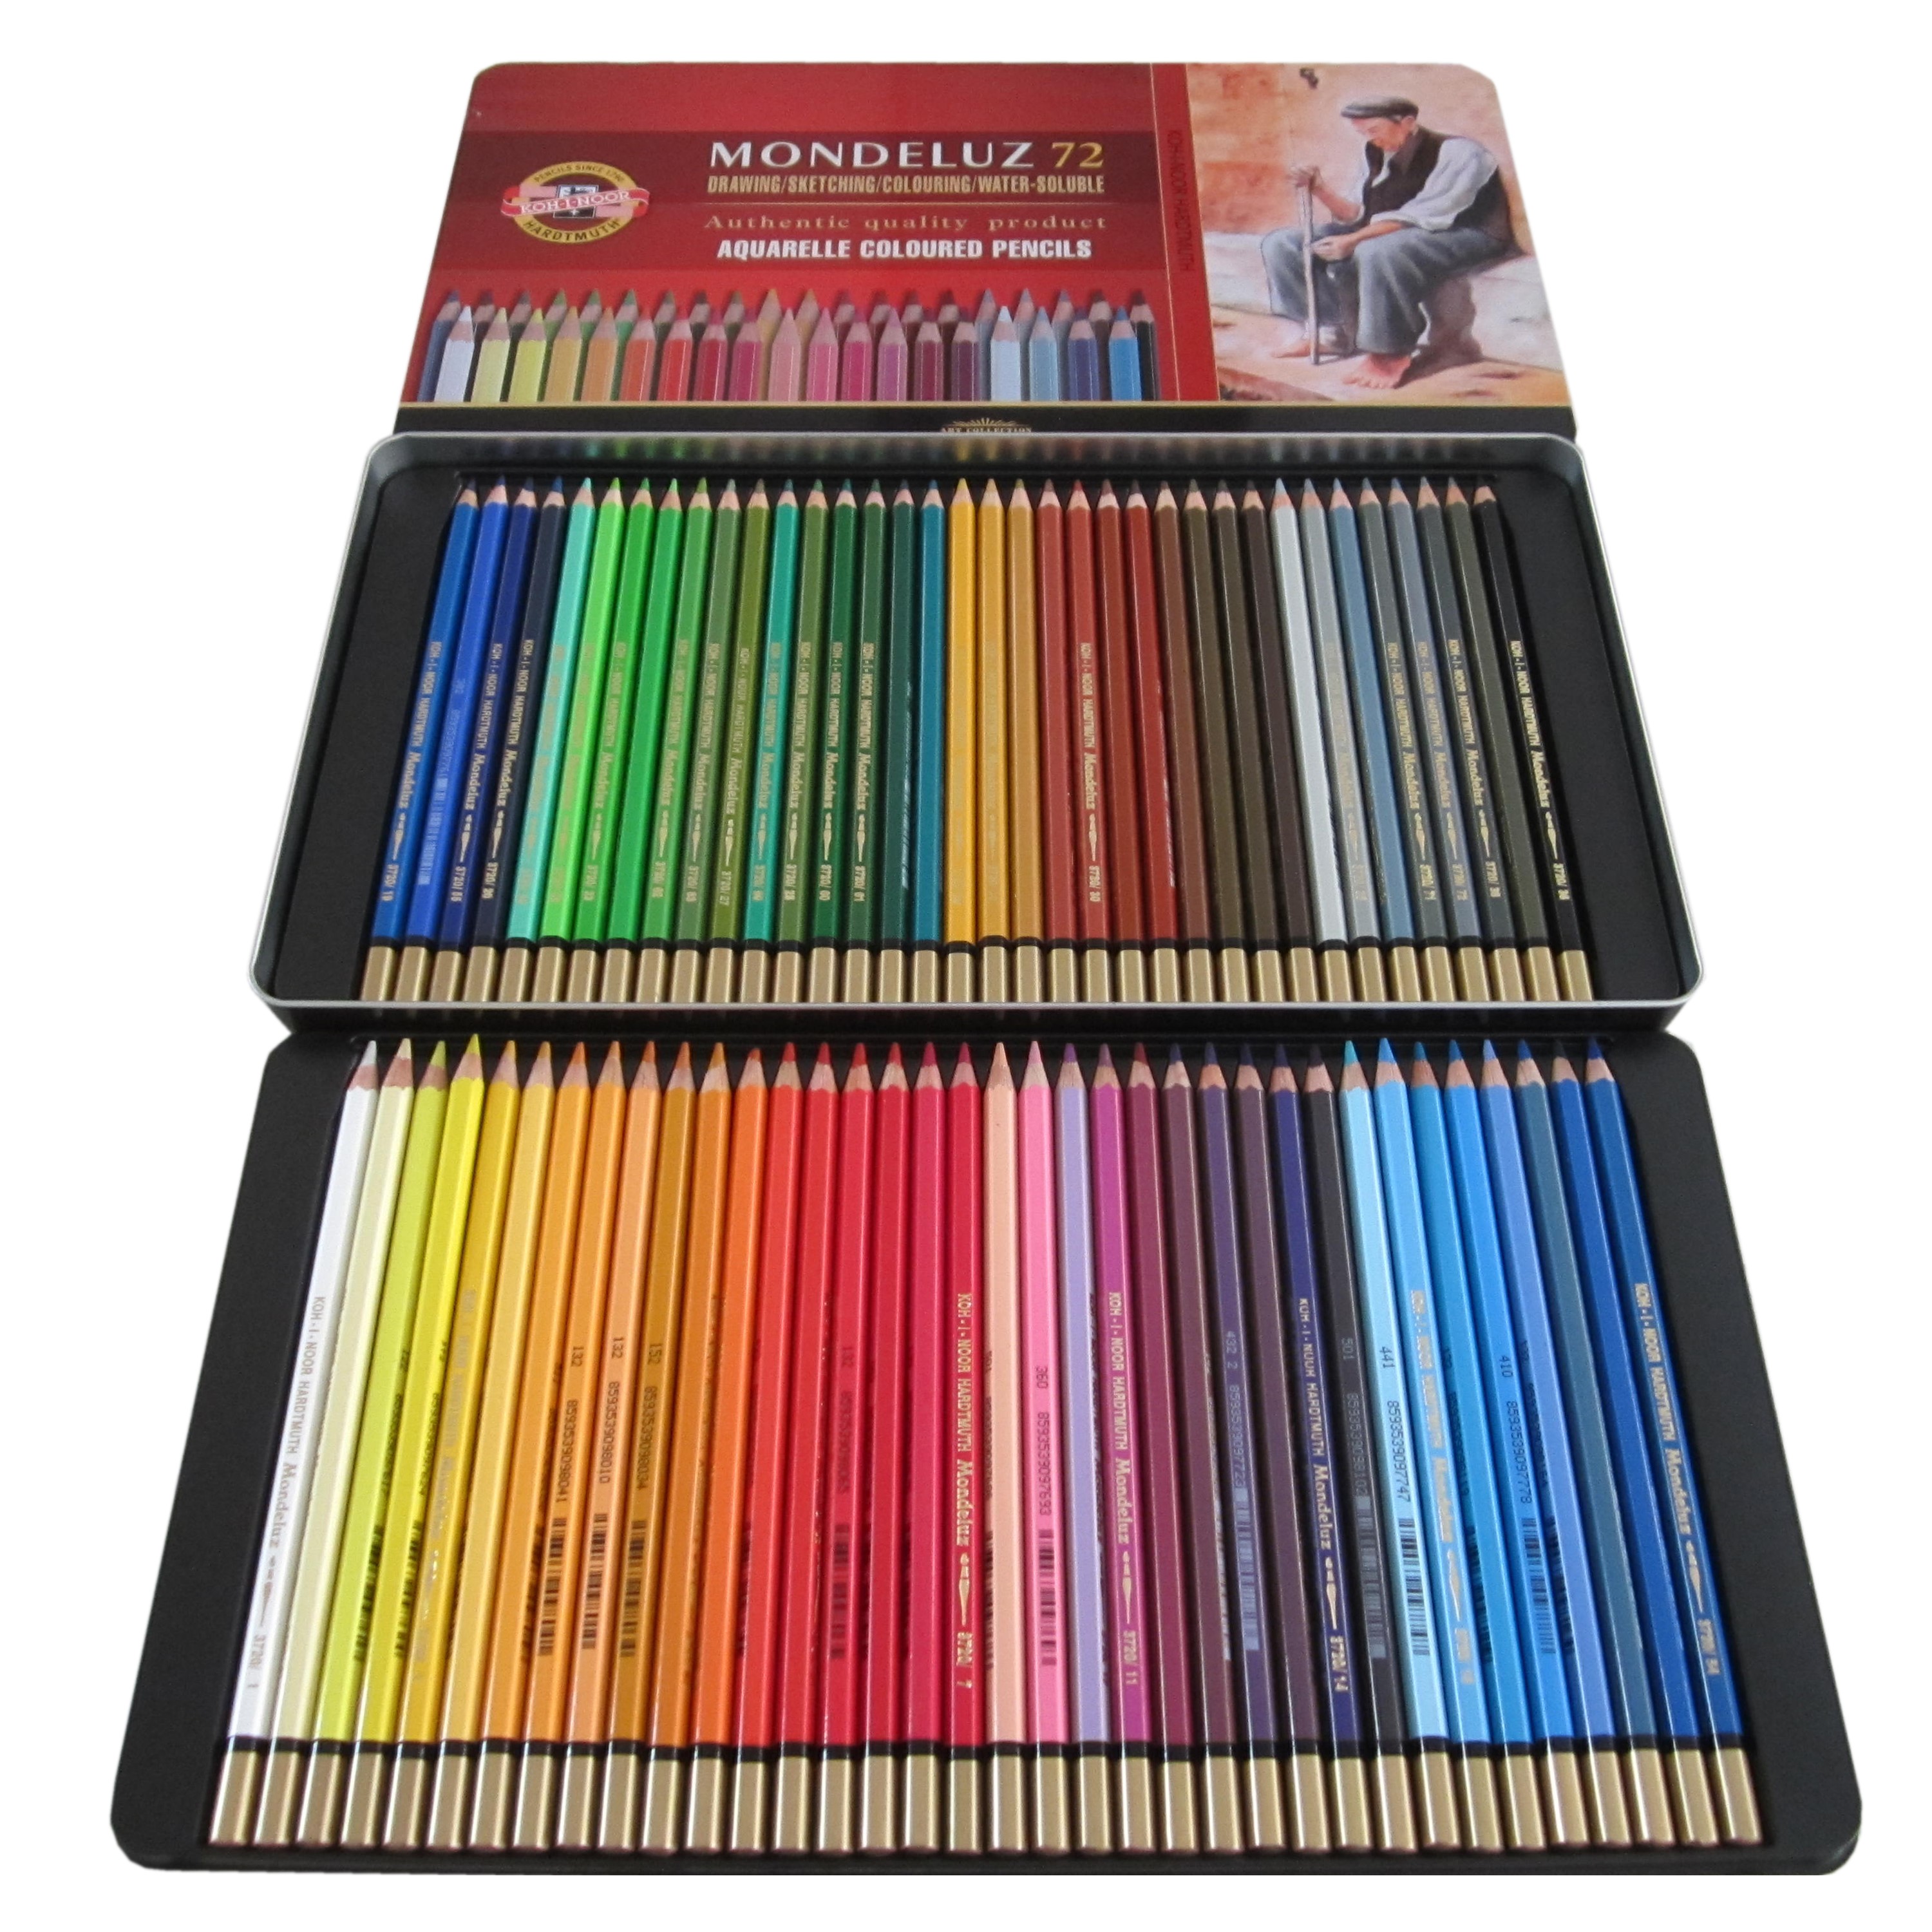 Zeichnen 72 Aquarell Buntstifte Set,Buntstifte,Brillanten Farben Bleistifte